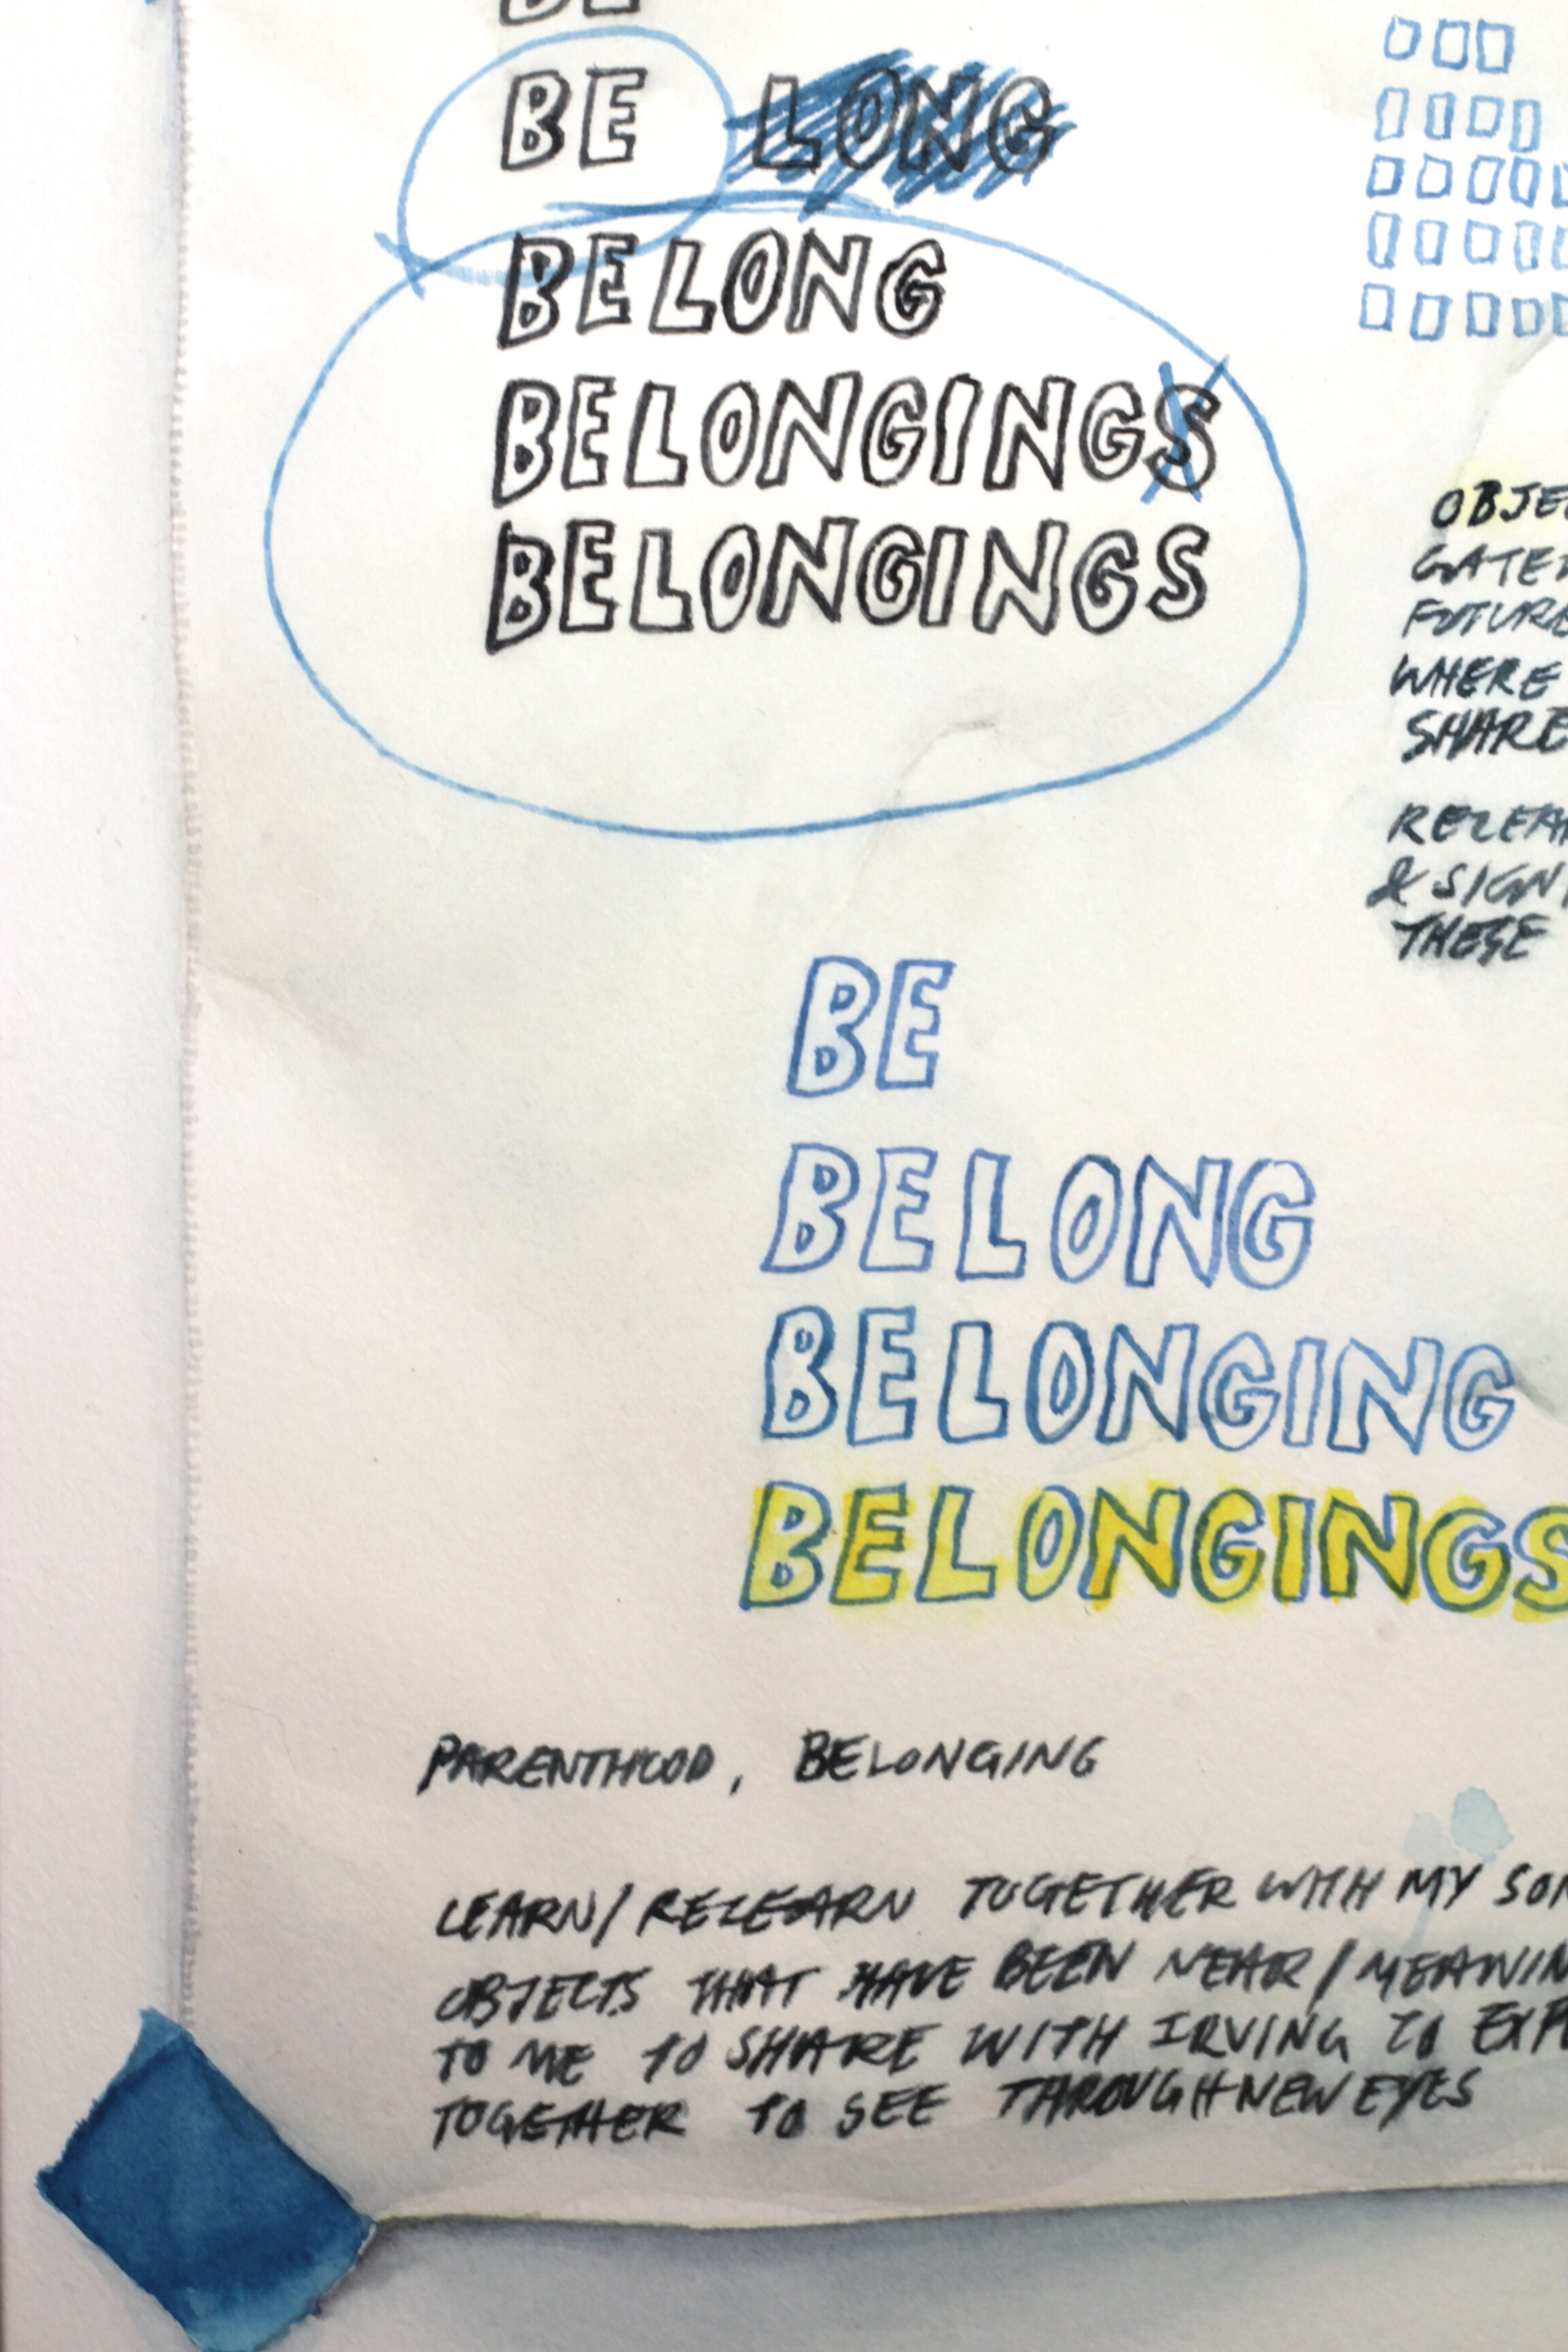 Notes on Belonging (detail)